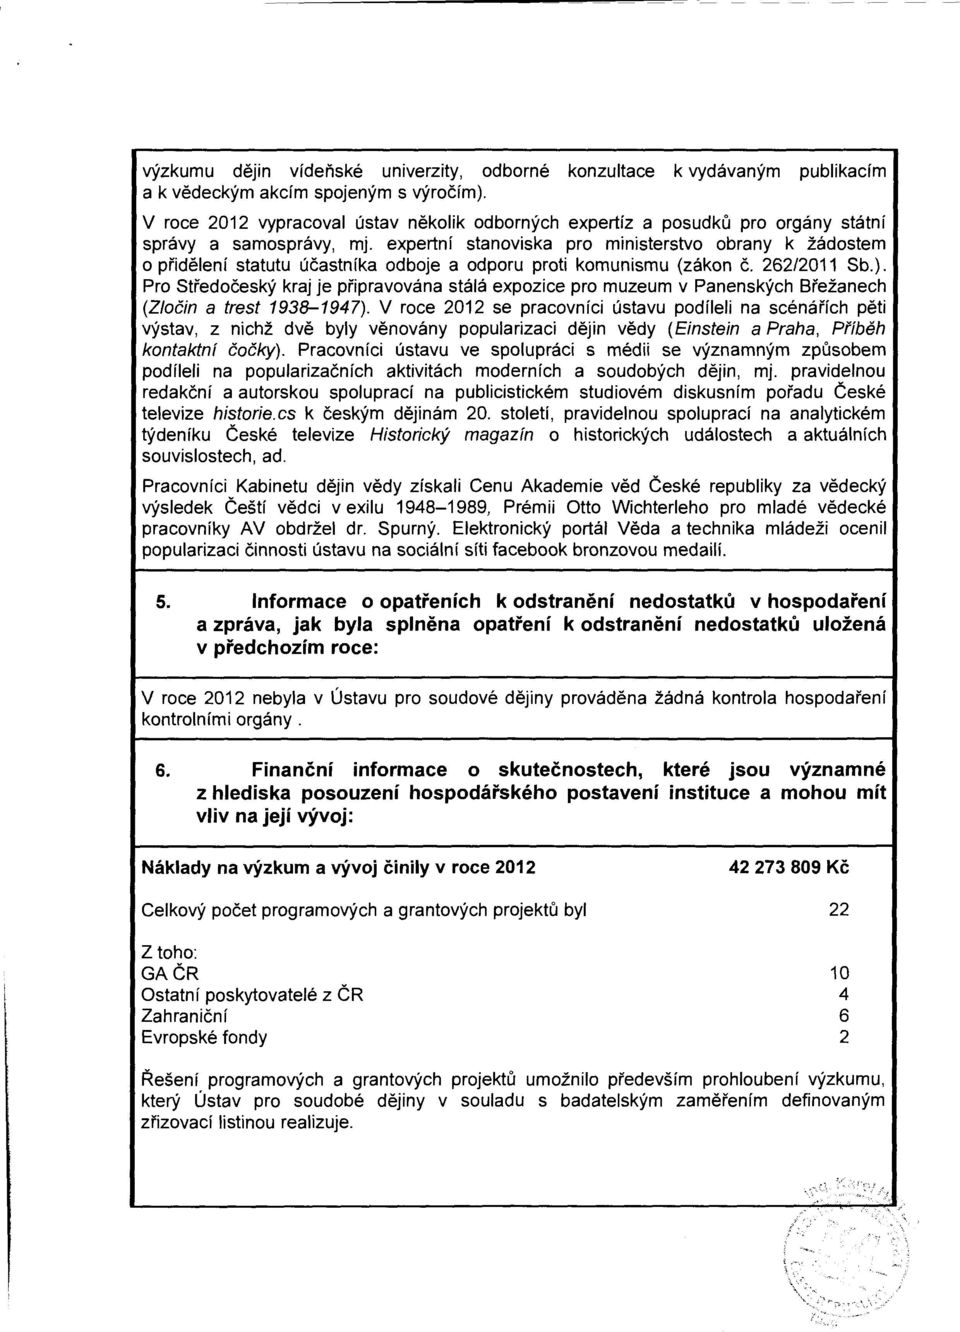 expertní stanviska pr ministerstv brany k žádstem přidělení statutu účastníka dbje a dpru prti kmunismu (zákn č. 262/2011 Sb.).